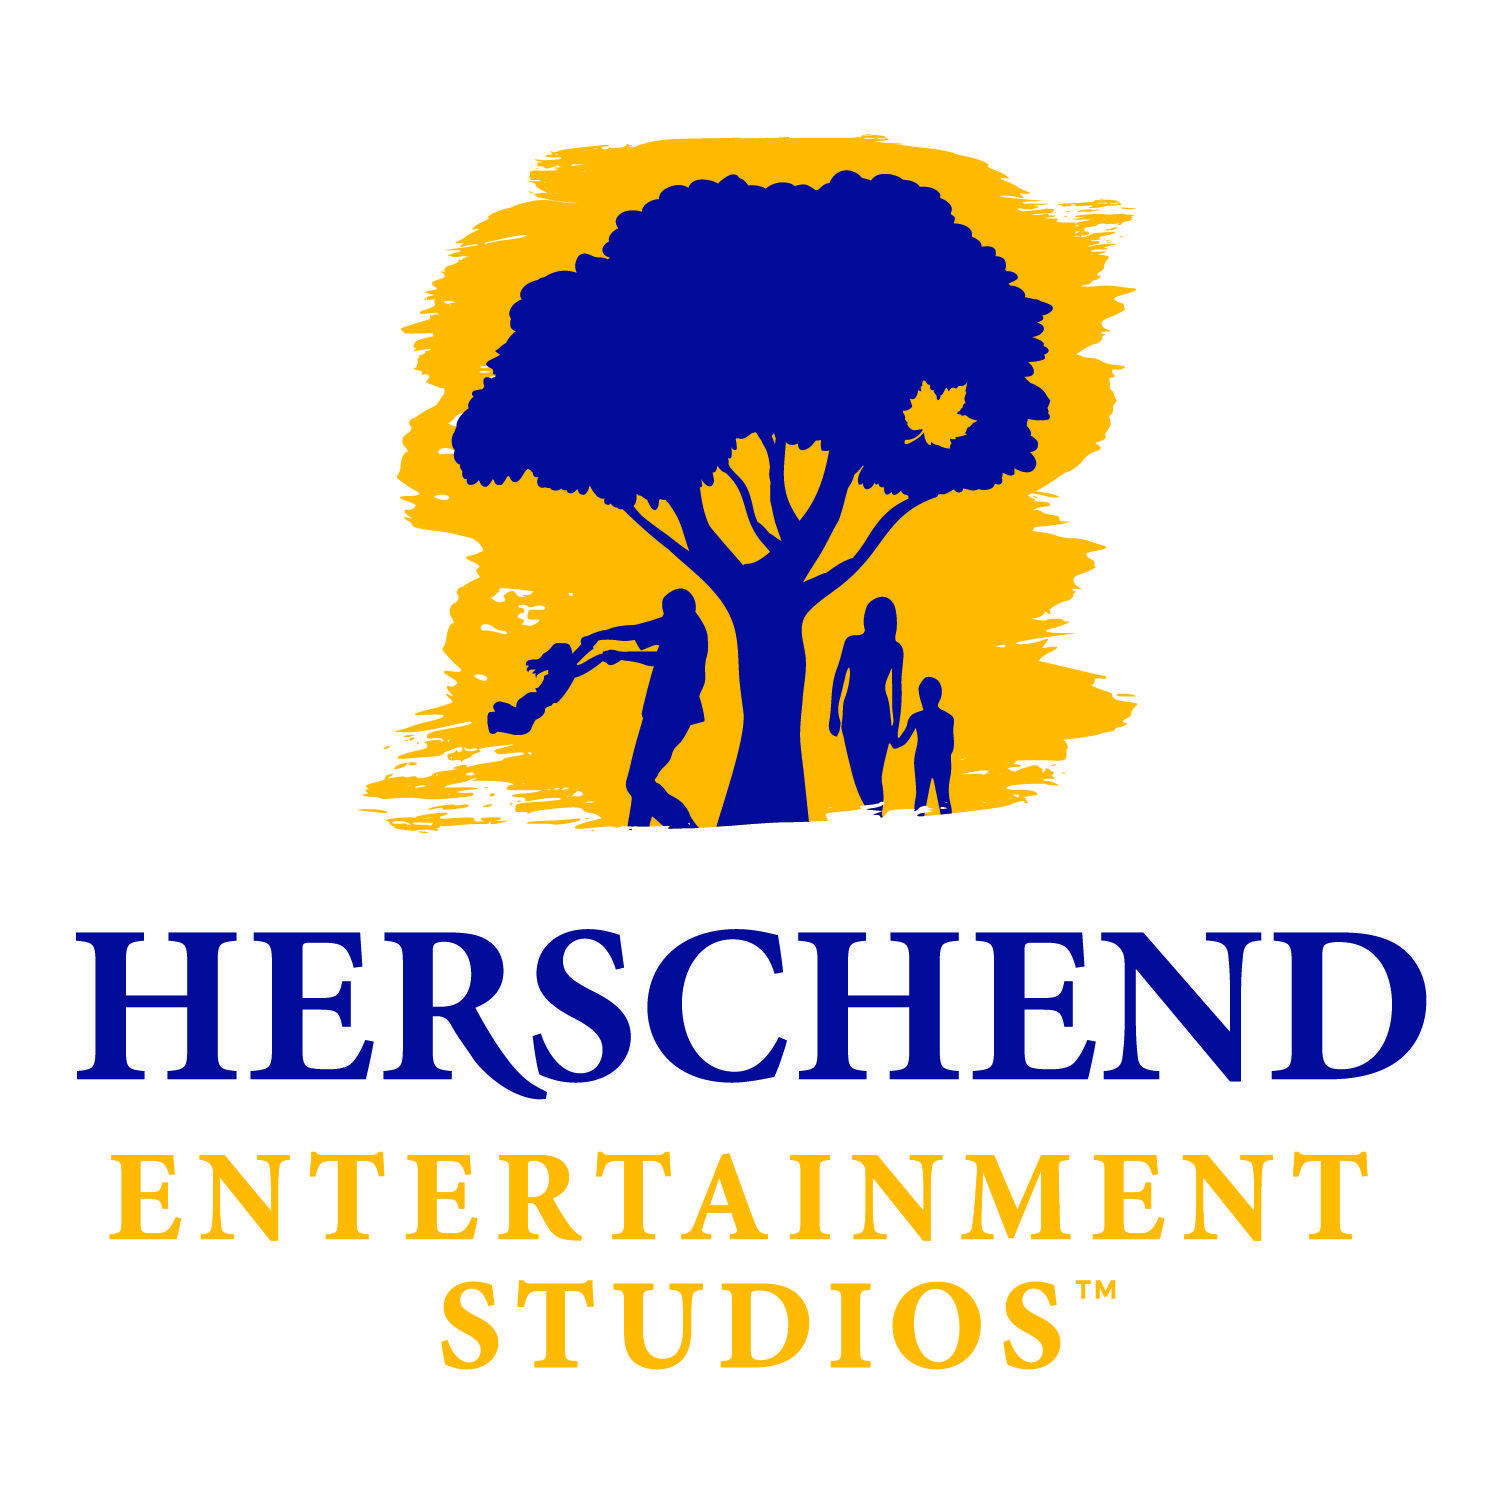 Ludorom Logo - Herschend Entertainment Studios | Chuggington Wiki | FANDOM powered ...